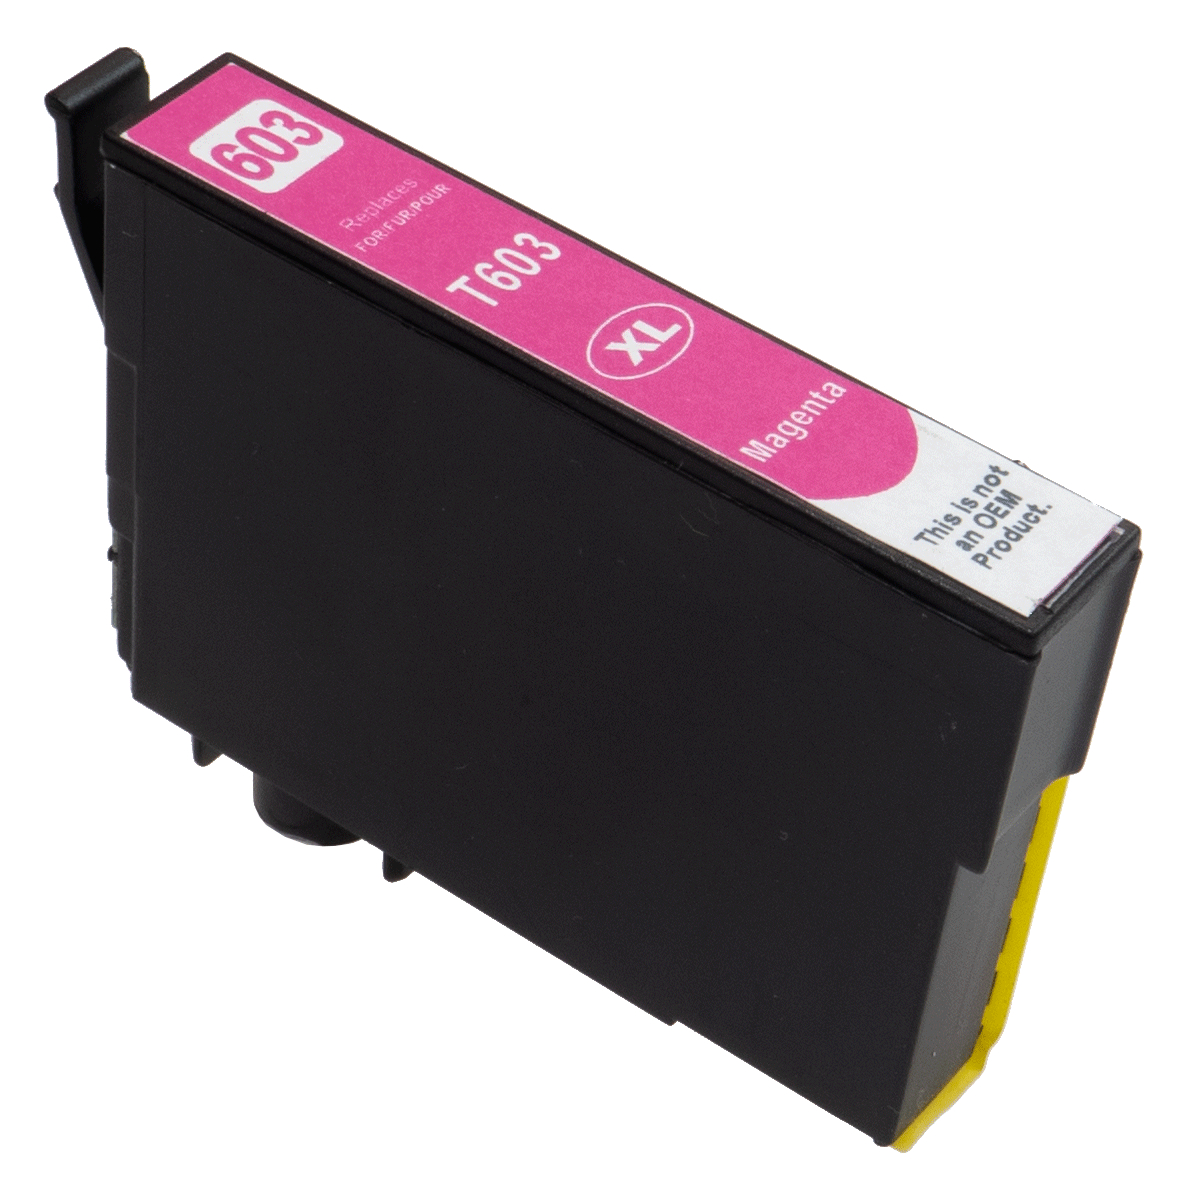 Kompatibel med Epson WF-3520 bläckpatron, 14ml, svart